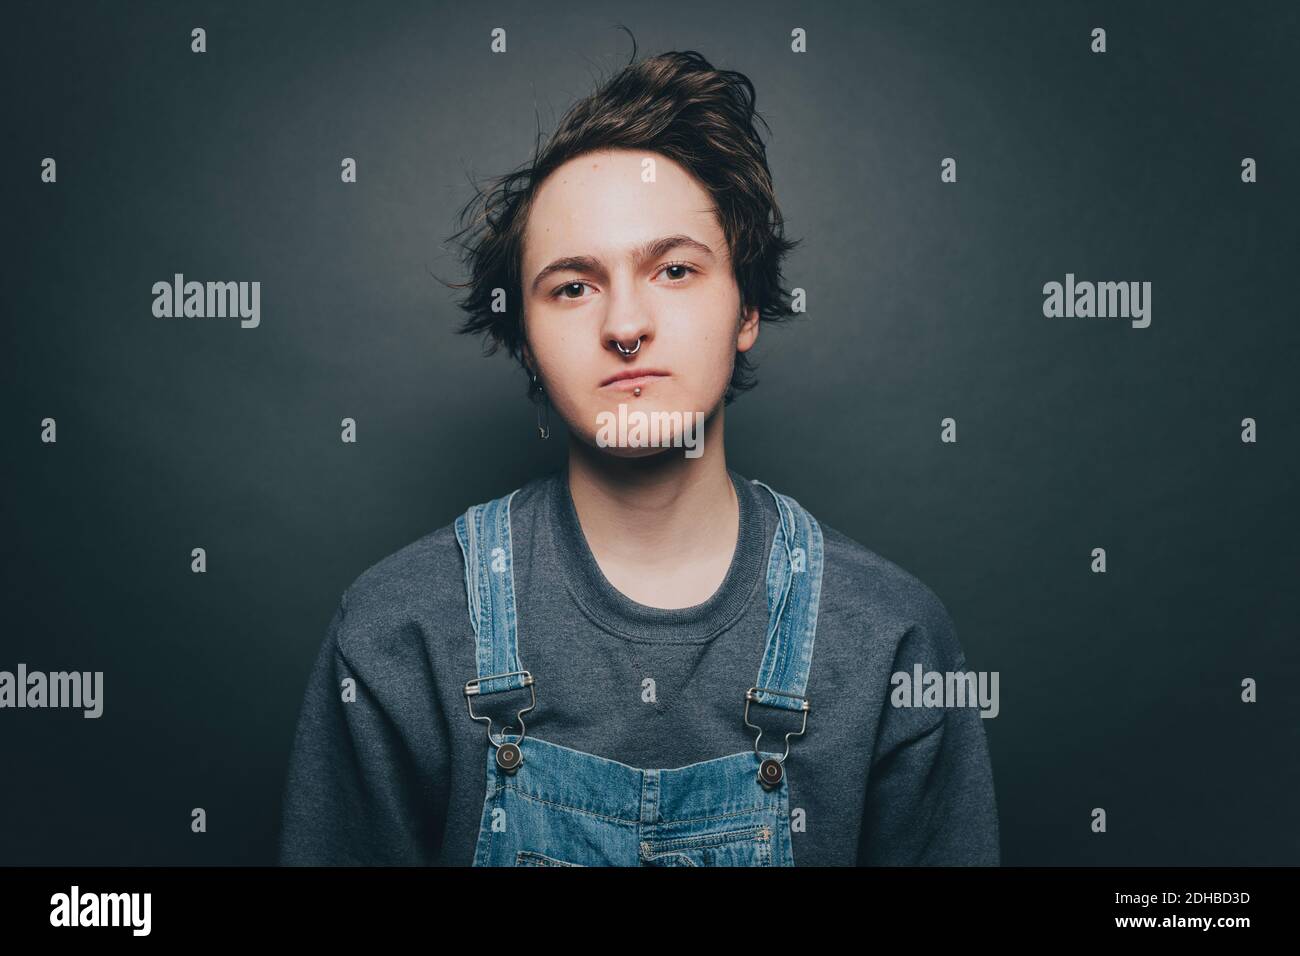 Porträt eines selbstbewussten jungen Mannes mit Overalls auf grauem Hintergrund Stockfoto